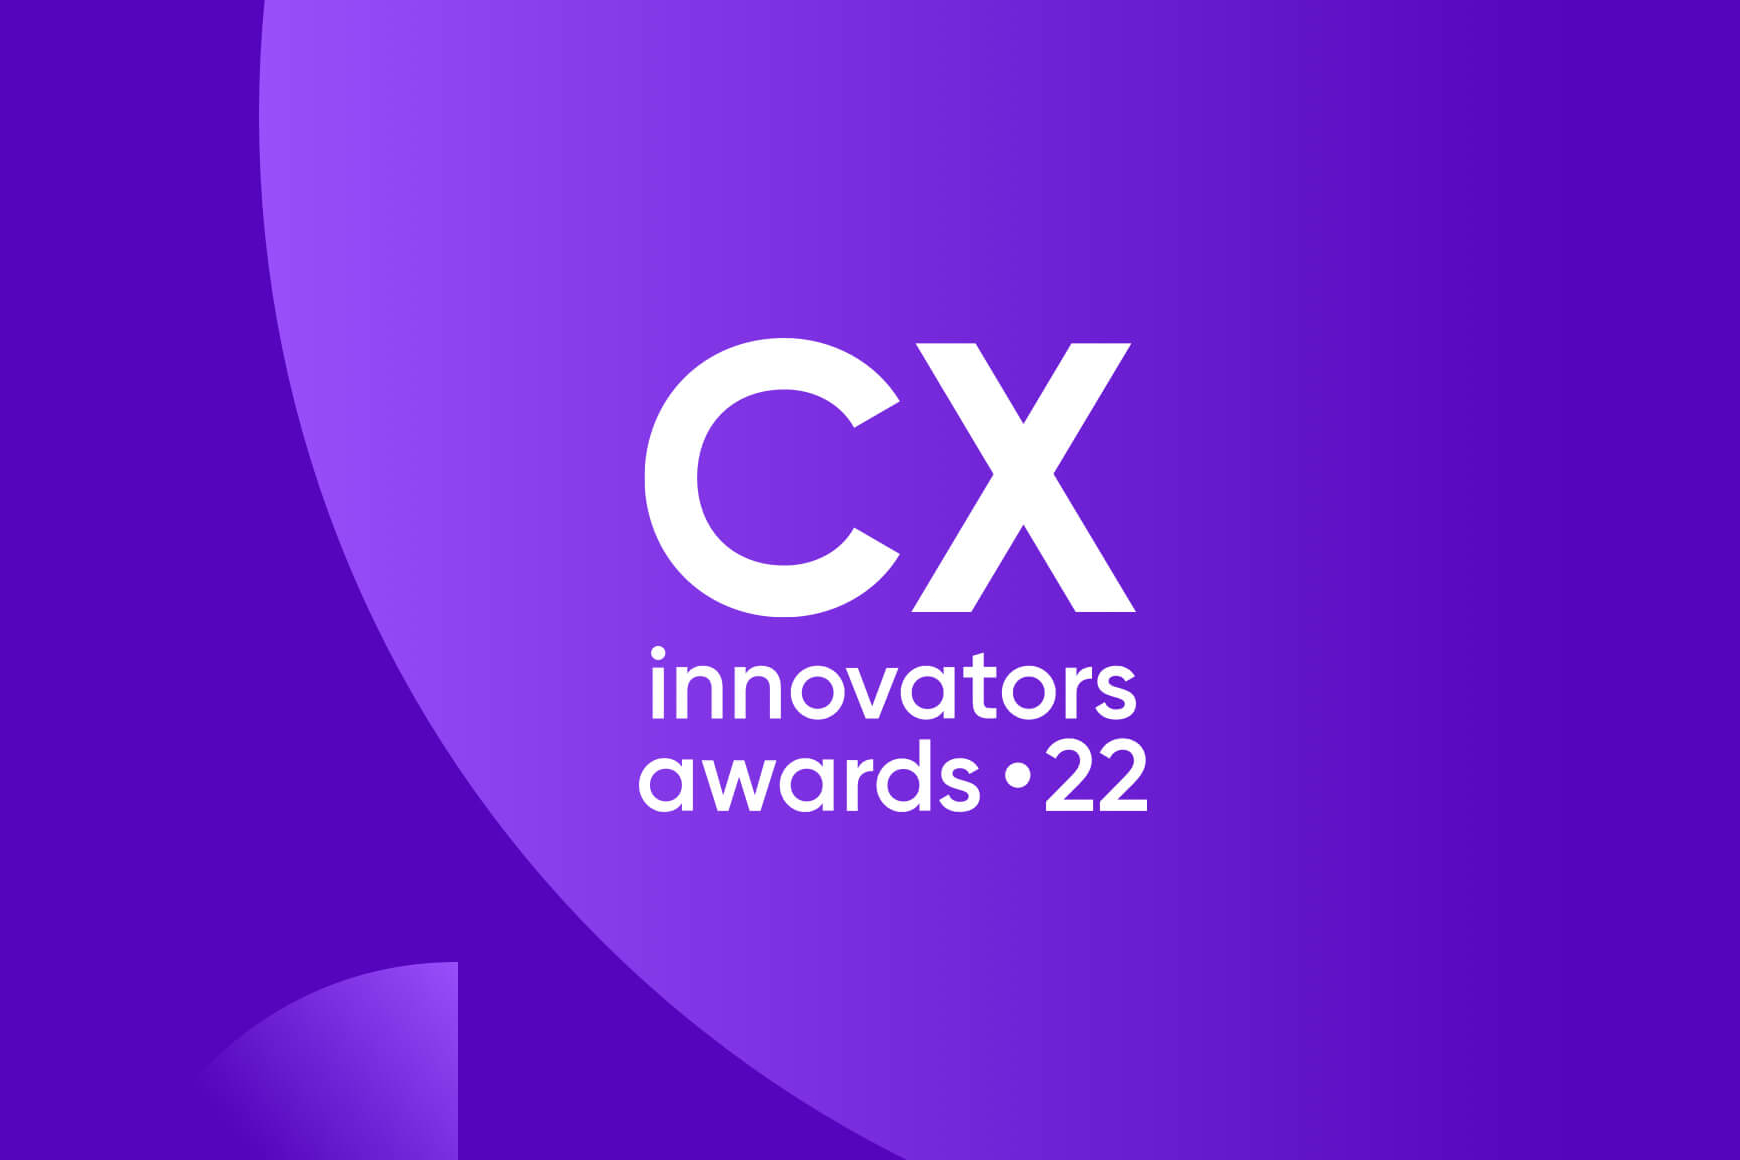 Saiba como os inovadores em CX estão encontrando uma maneira melhor de colocar os clientes em primeiro lugar.